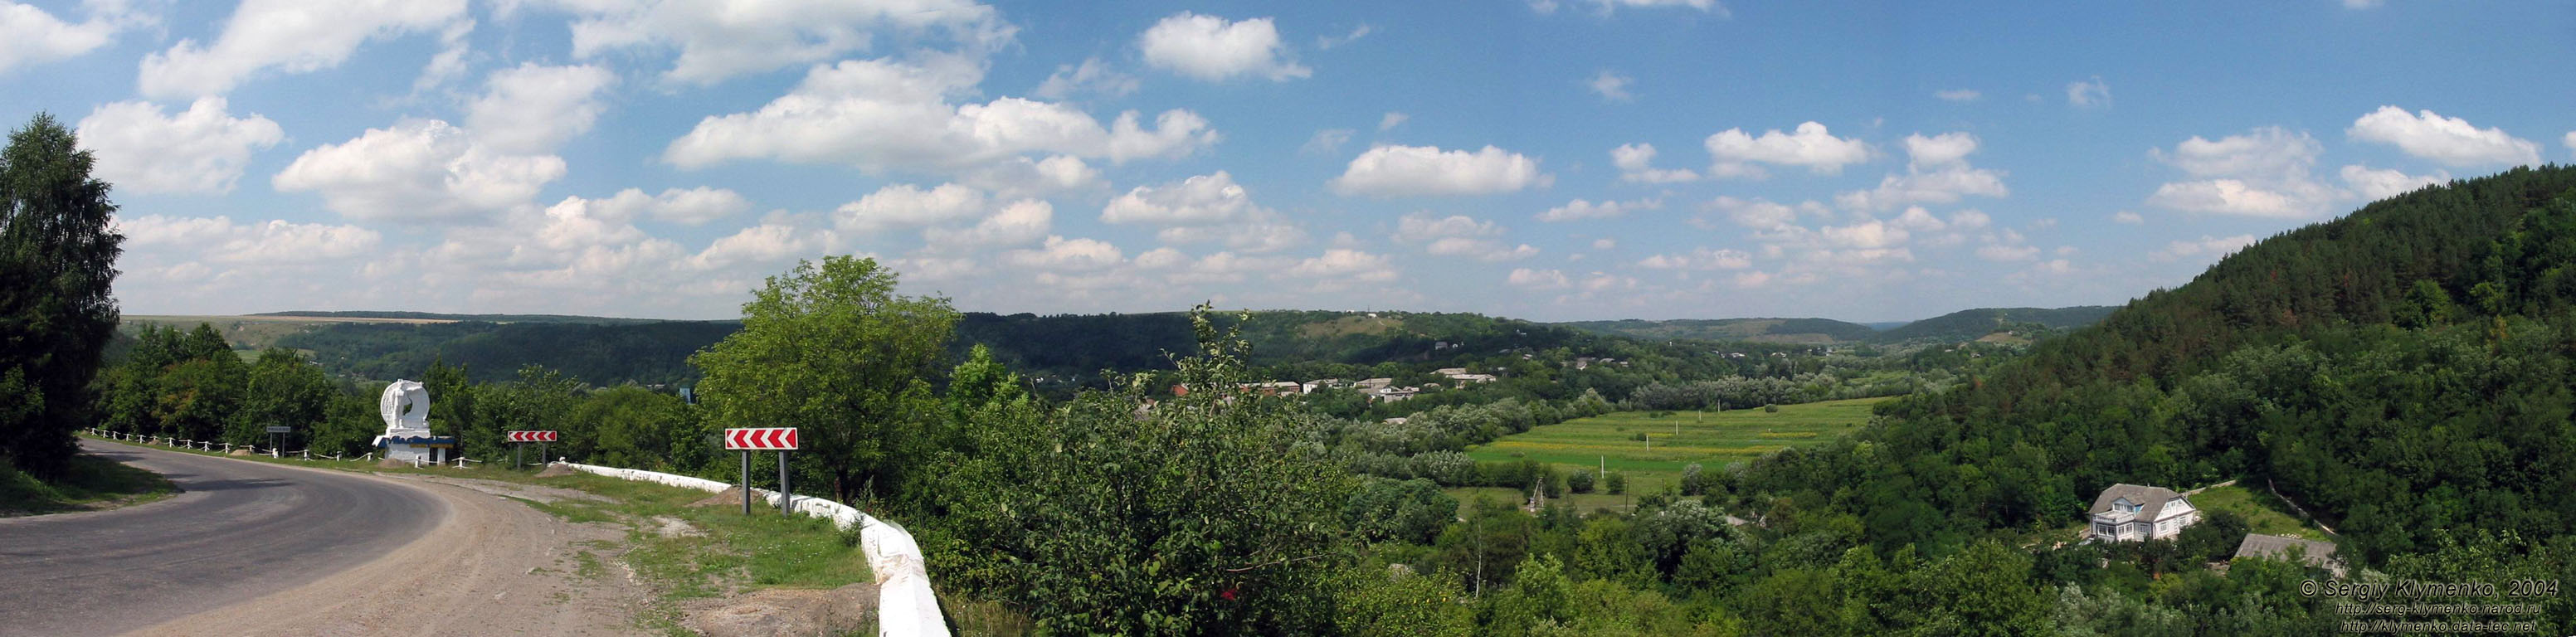 Поділля, Хмельниччина. Краєвид від джерела поблизу села Миньківці.